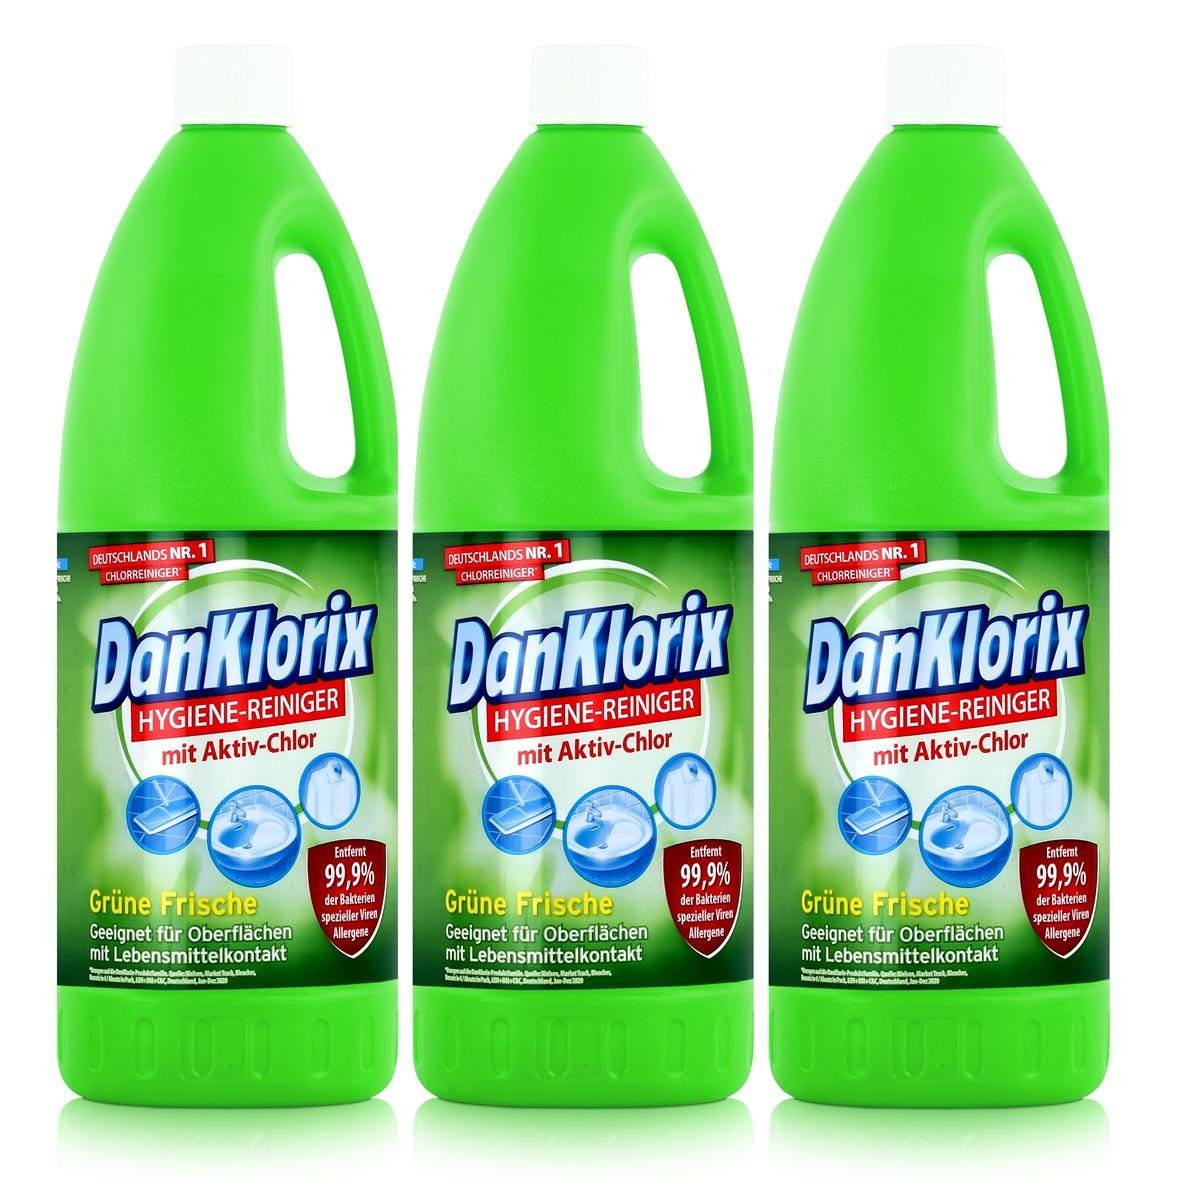 DanKlorix DanKlorix Hygiene-Reiniger Grüne Frische 1,5L - Mit Aktiv-Chlor (3er P Allzweckreiniger